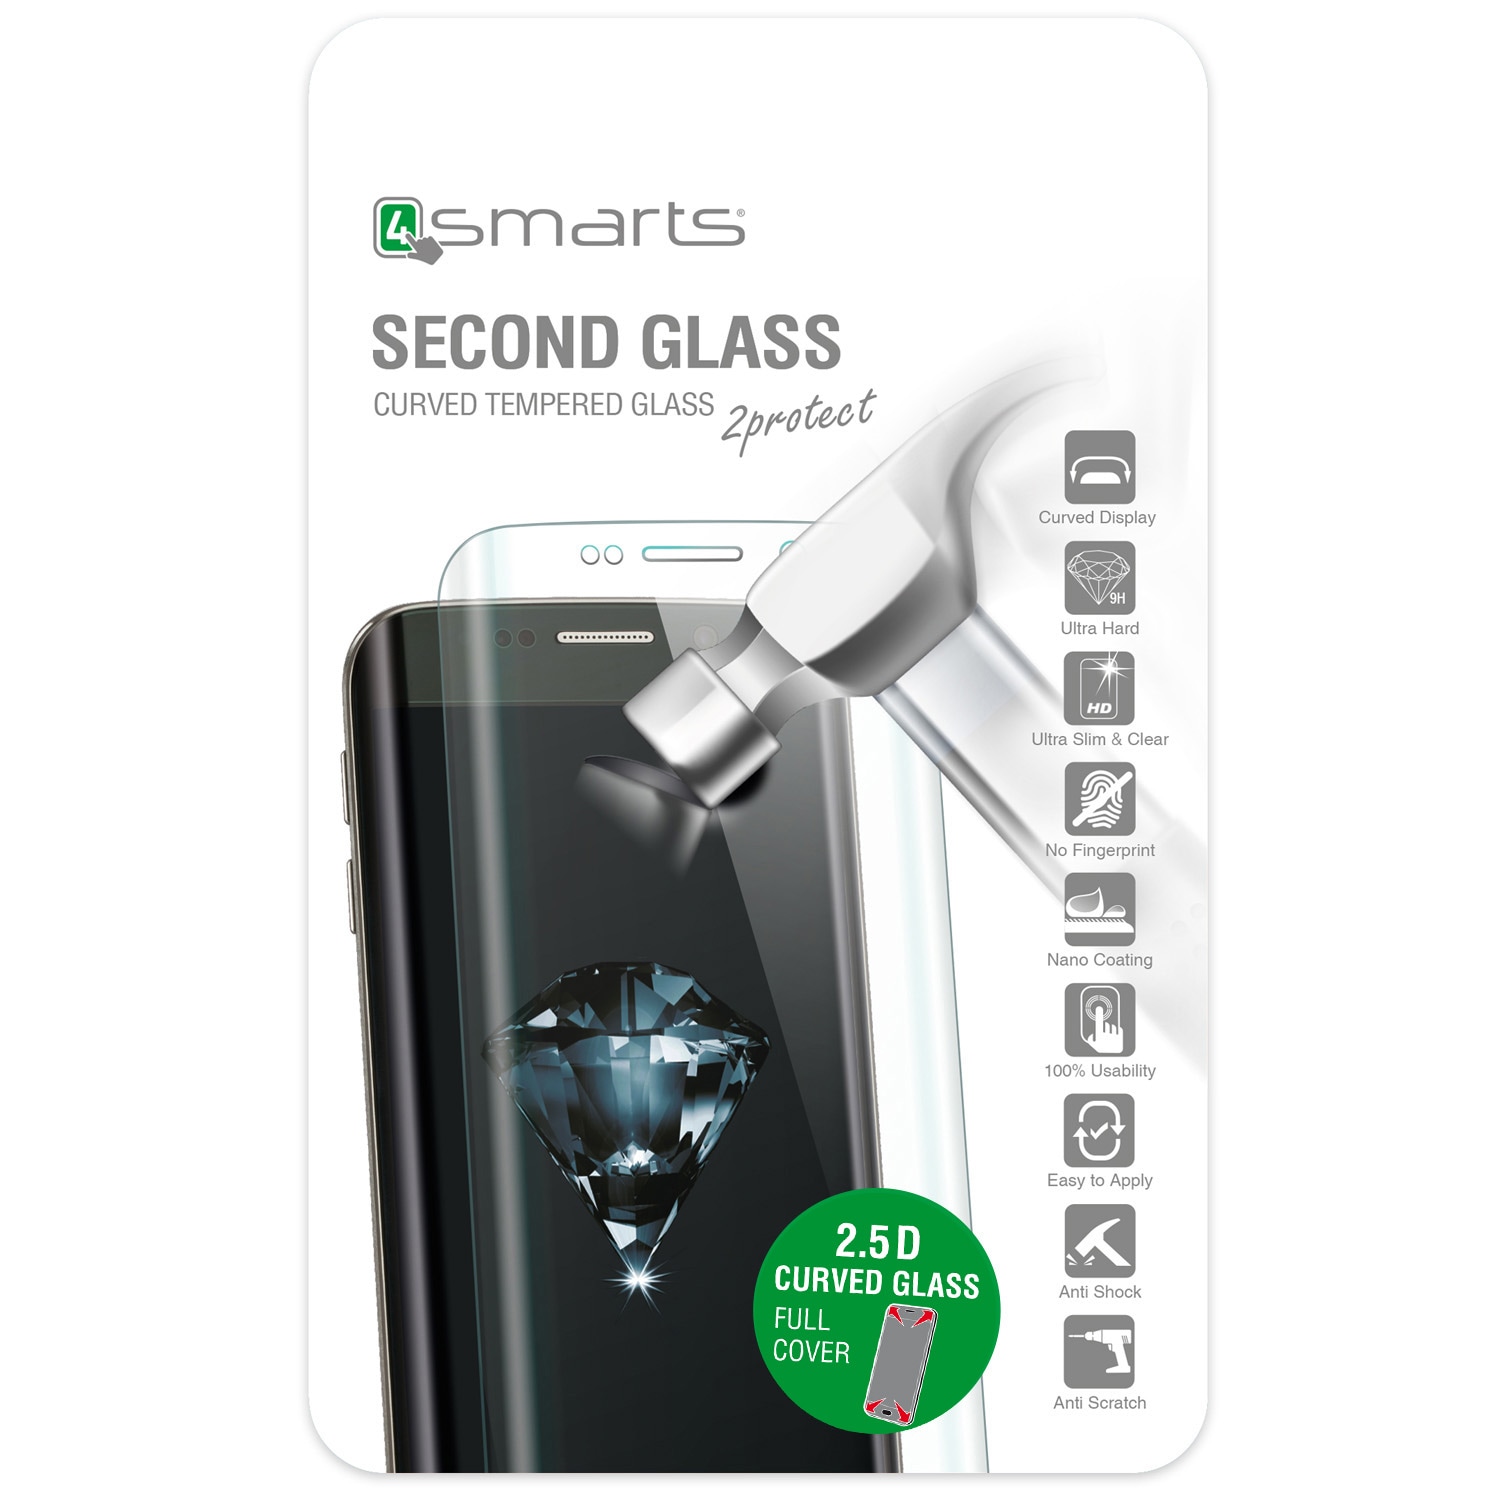 4smarts Second Glass Curved 2.5D til iPhone 6 / 6S - Sølv